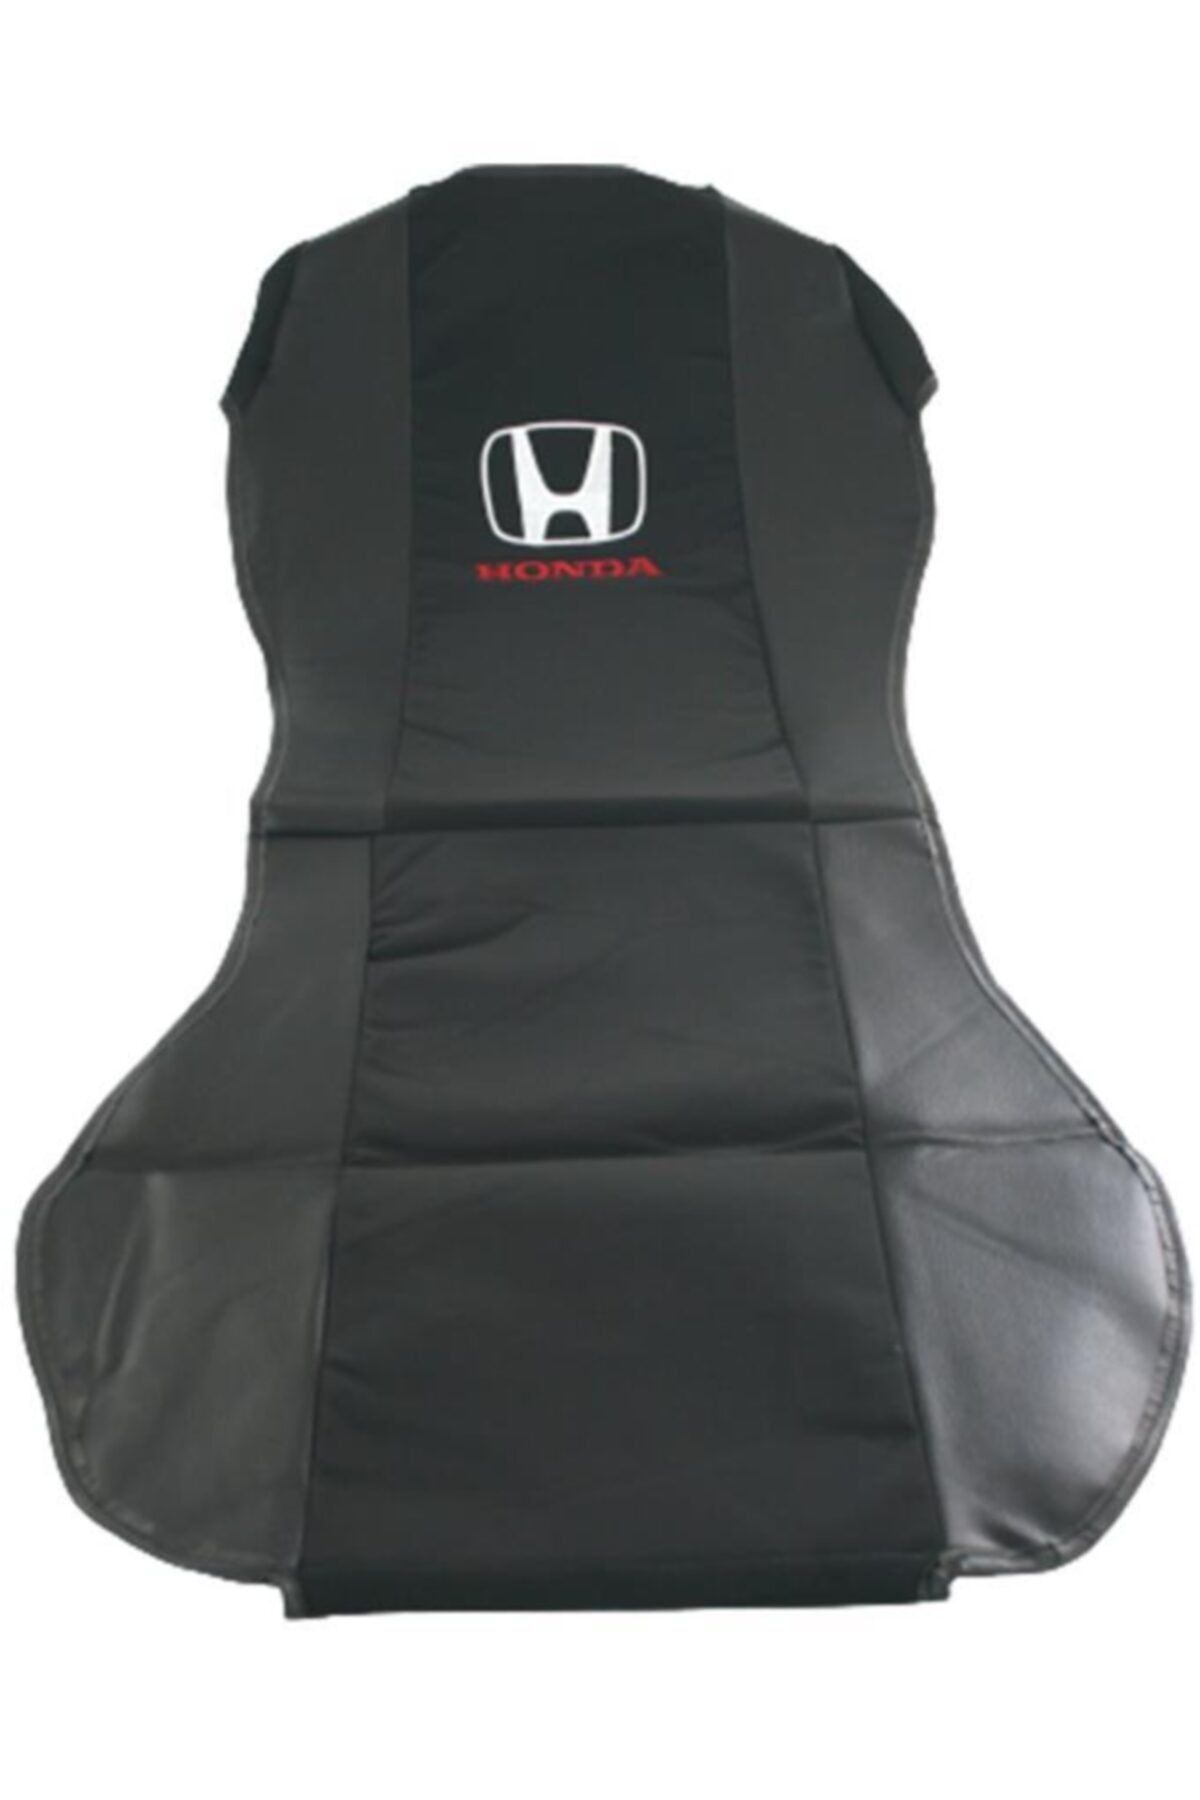 FırsatVar Oto Araç Koltuk Kılıfı Universal Honda Logolu Deri Araç